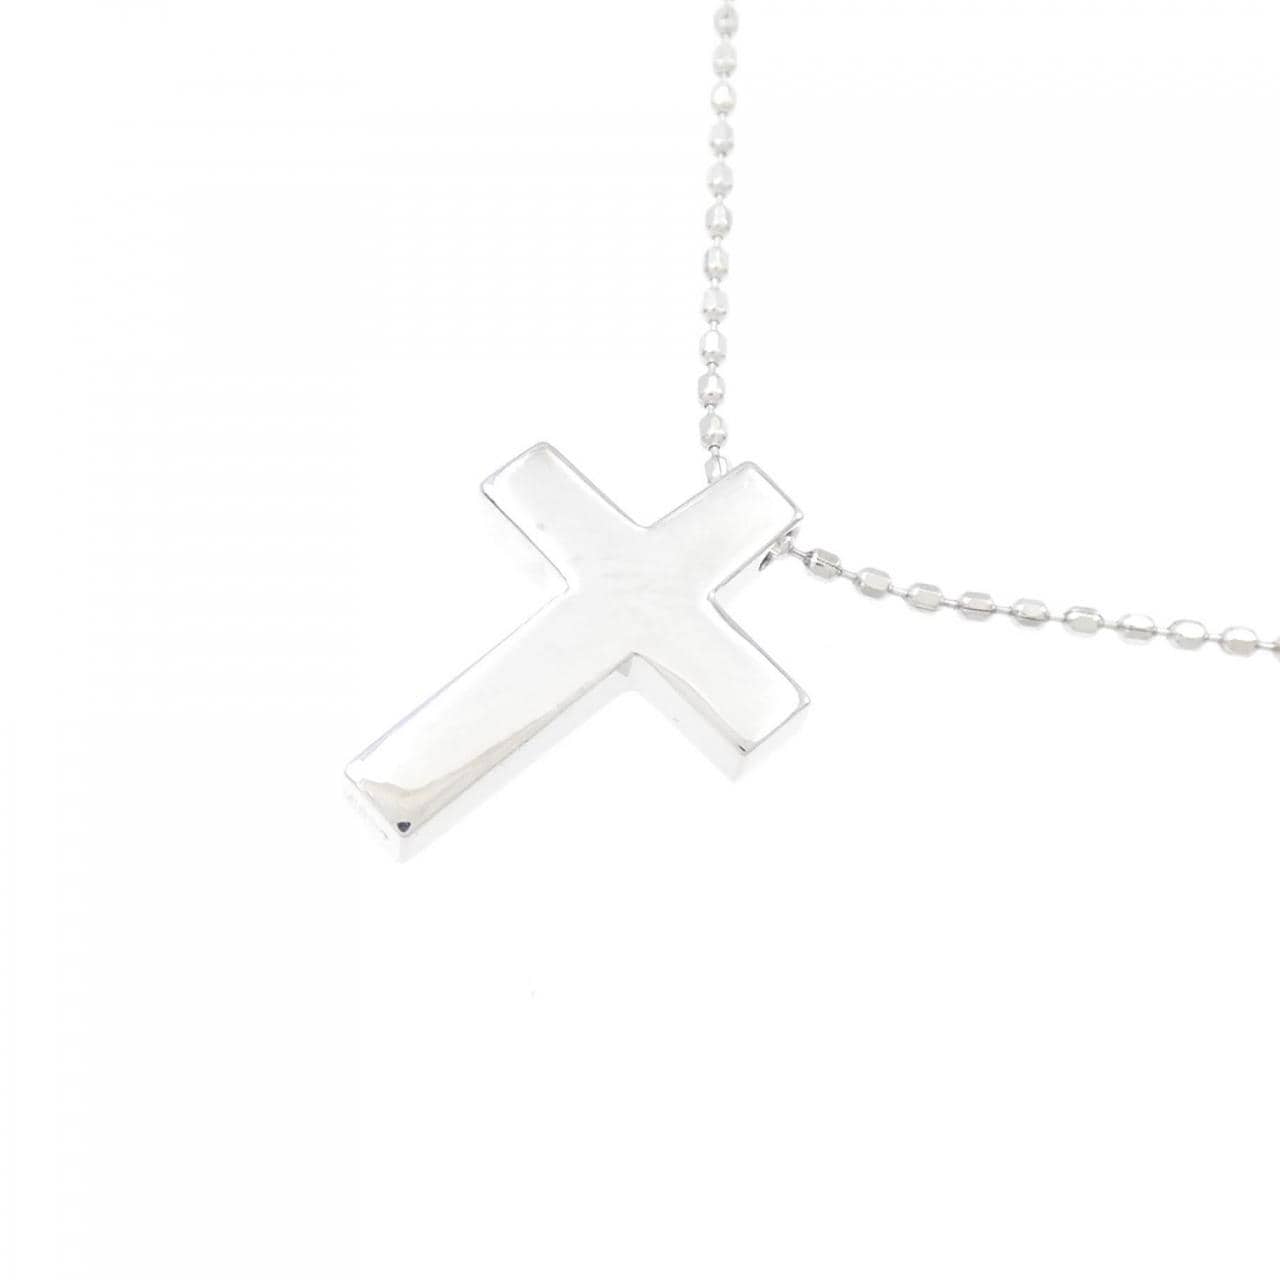 K18WG十字架项链